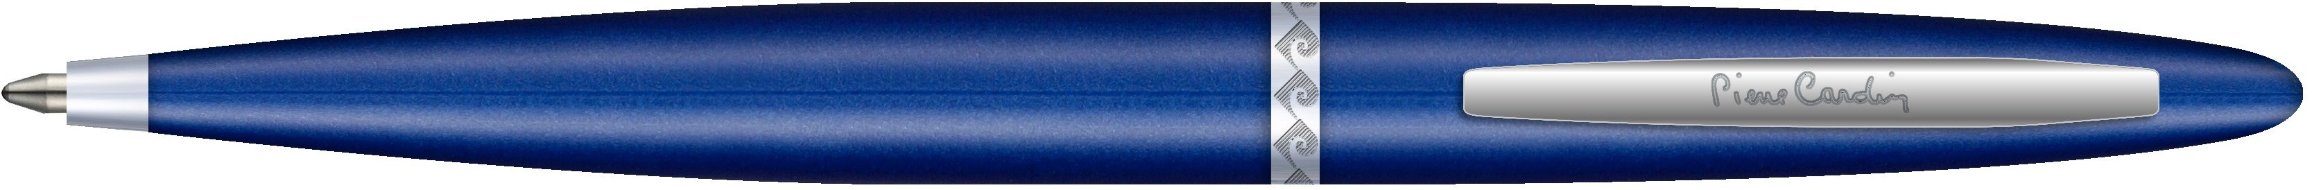 Ручка шариковая Pierre Cardin Capre, синяя, хром